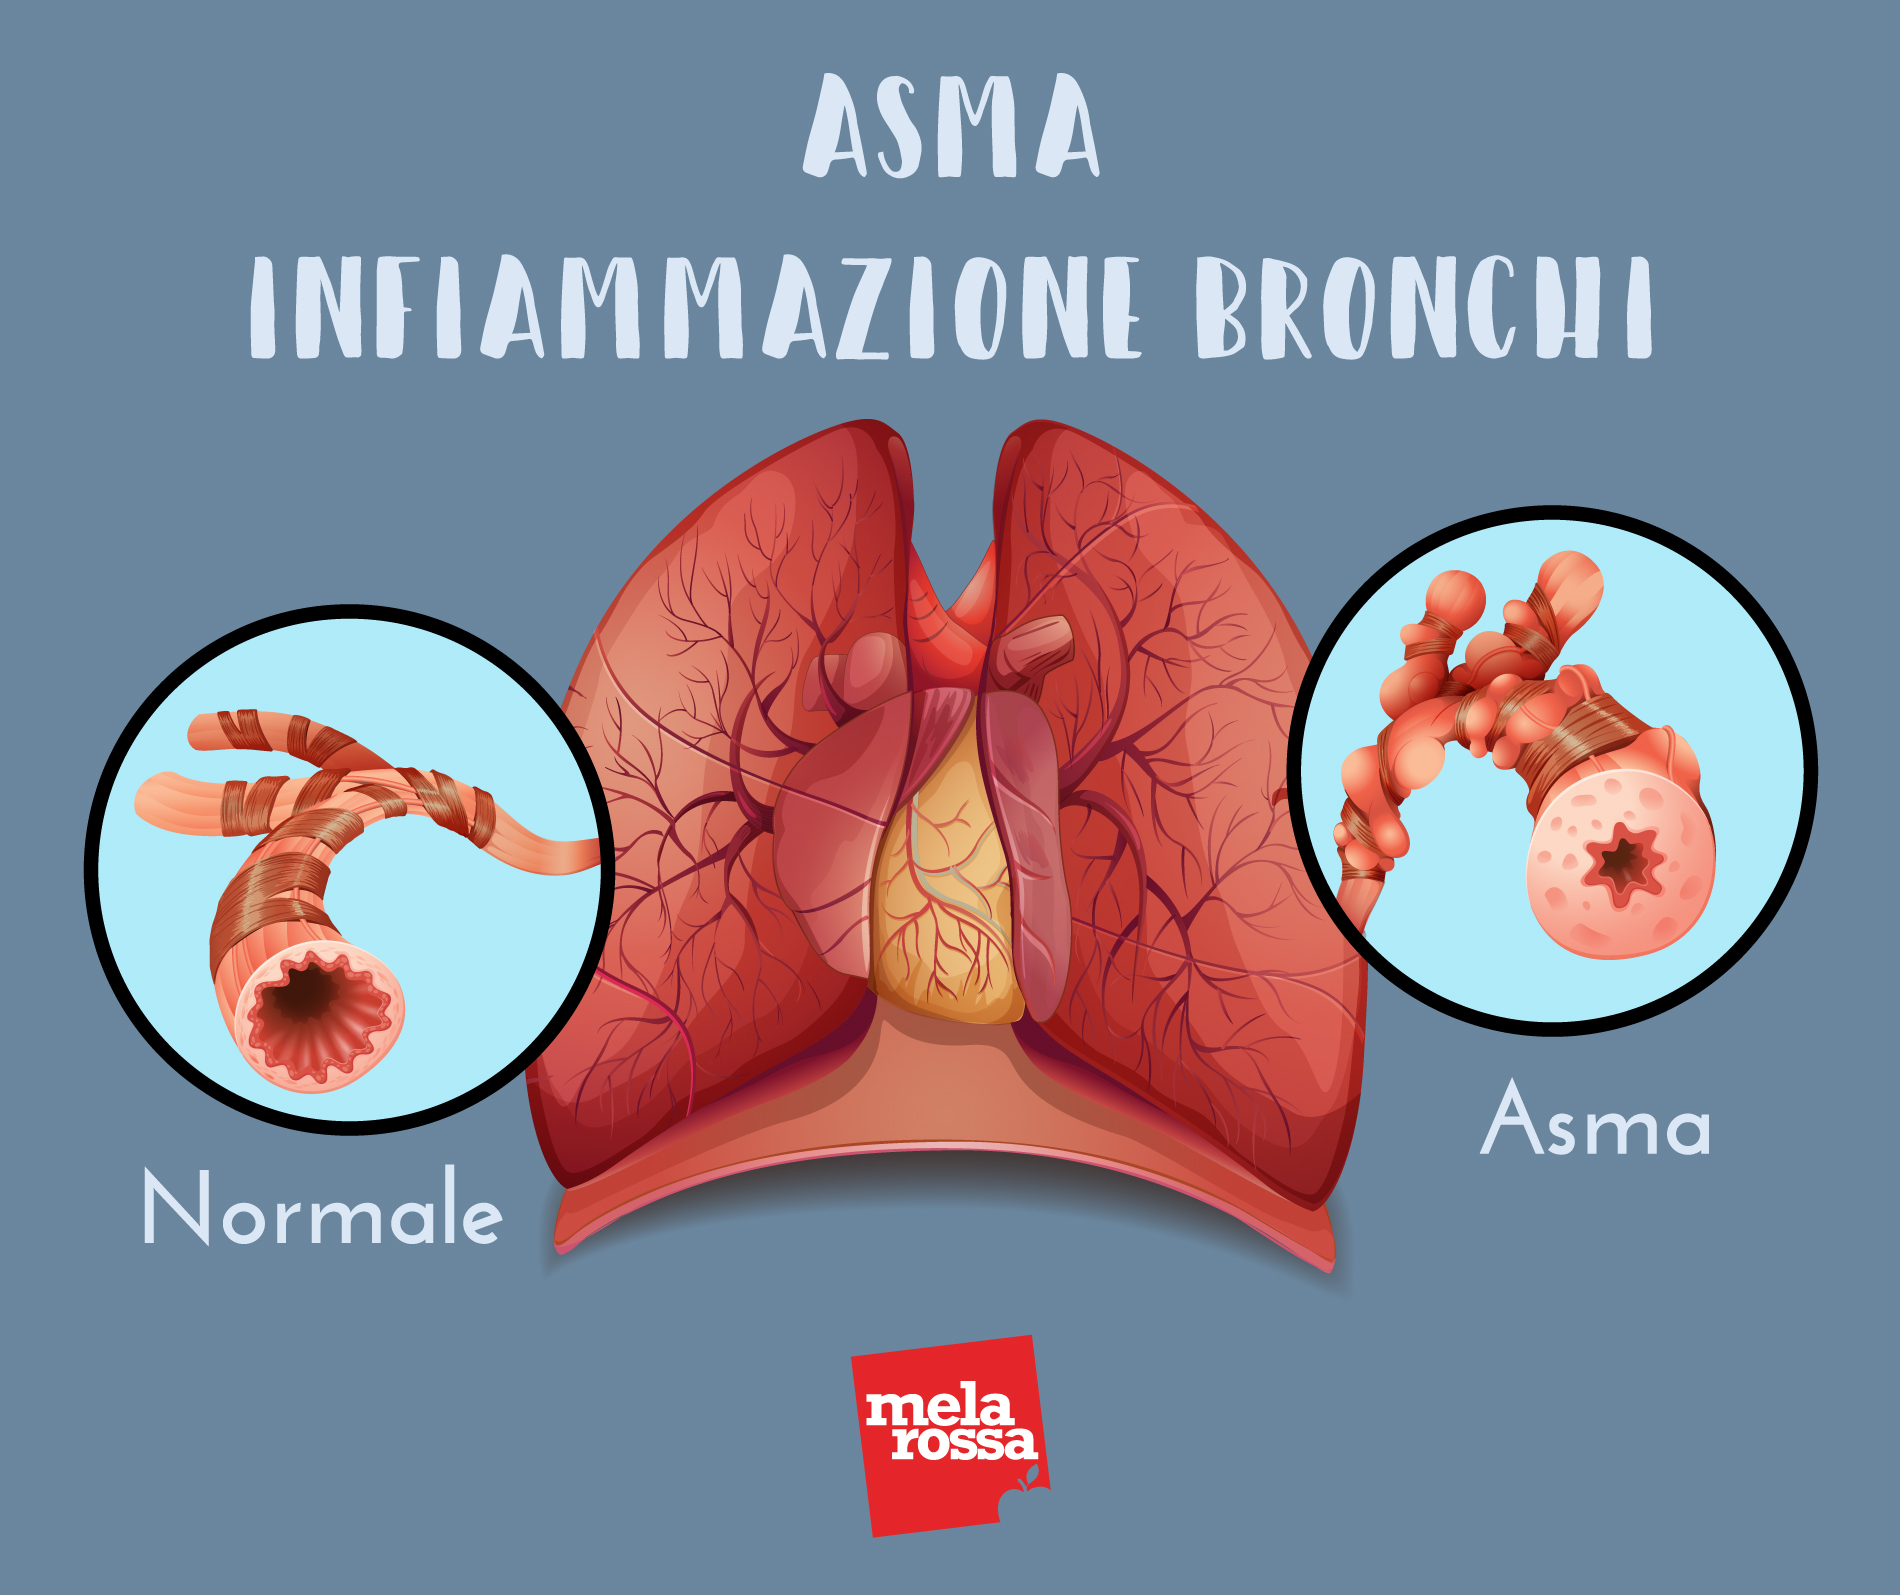 asma: infiammazione bronchi